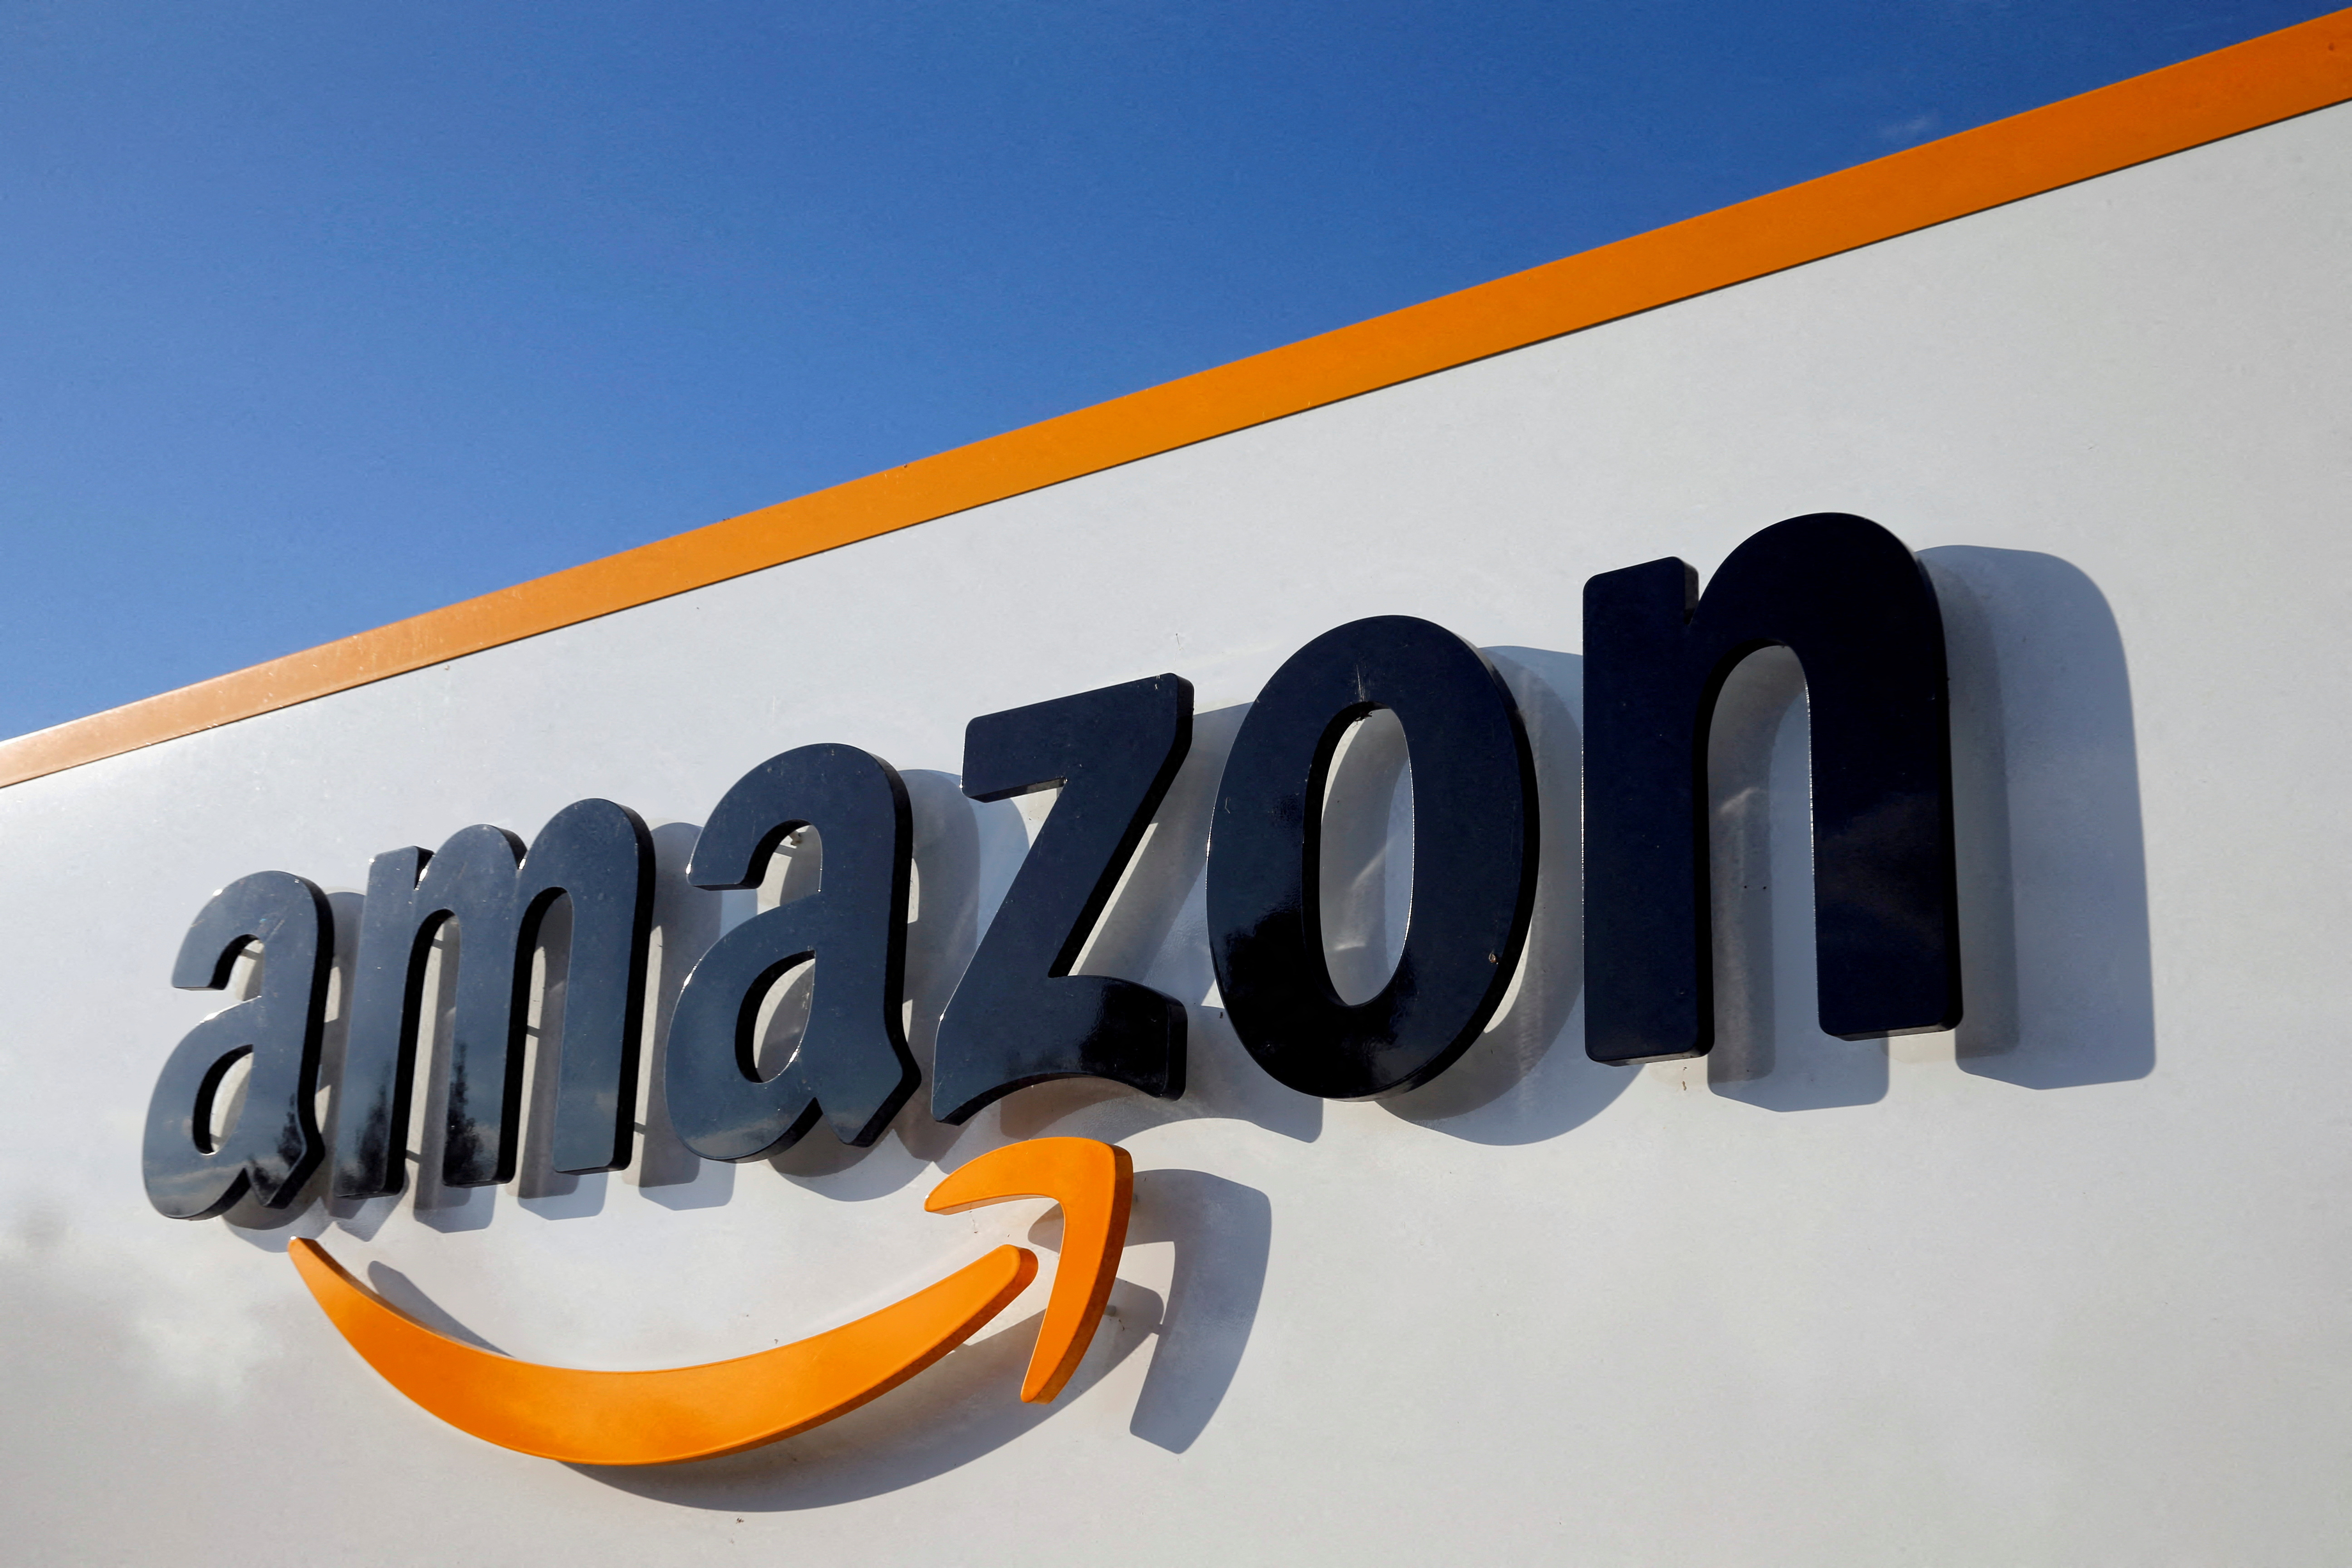 9 milliards d'euros : le chiffre d'affaires d'Amazon France a bondi de 23% en 2021